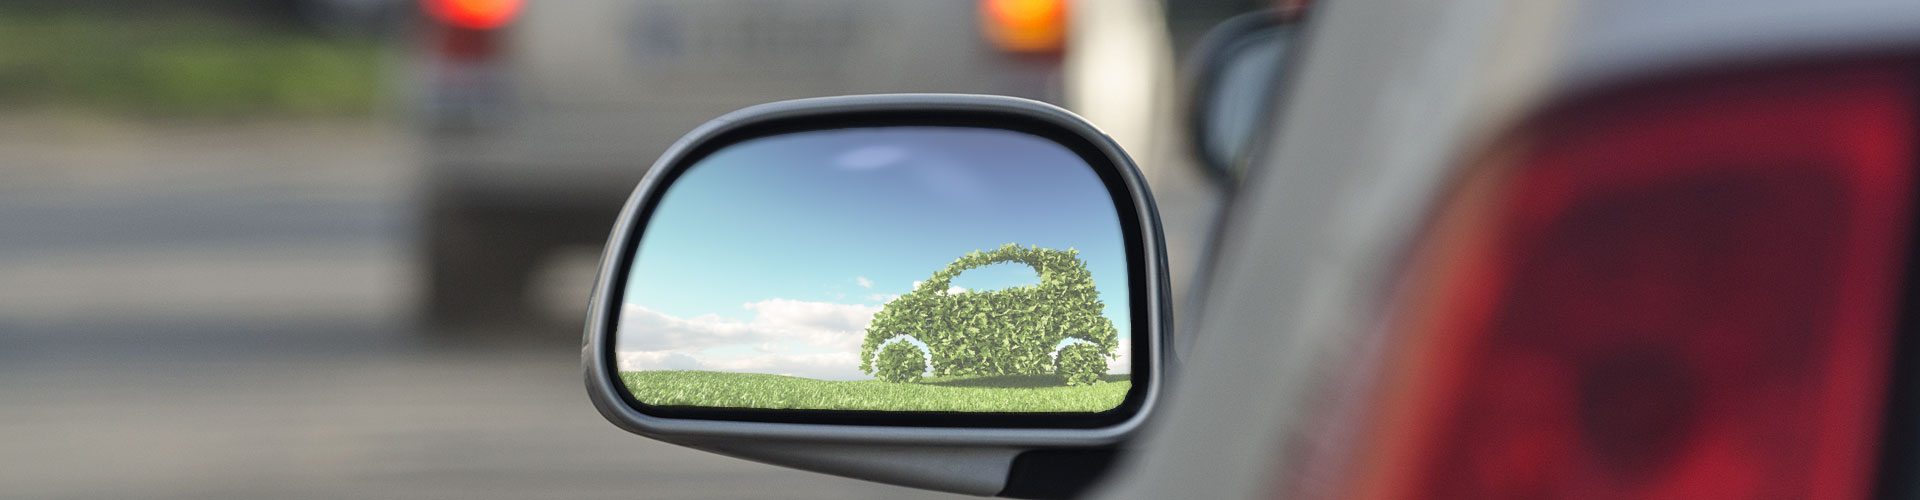 Elektroautofahrer sorgen für mehr Klimaschutz im Verkehrssektor